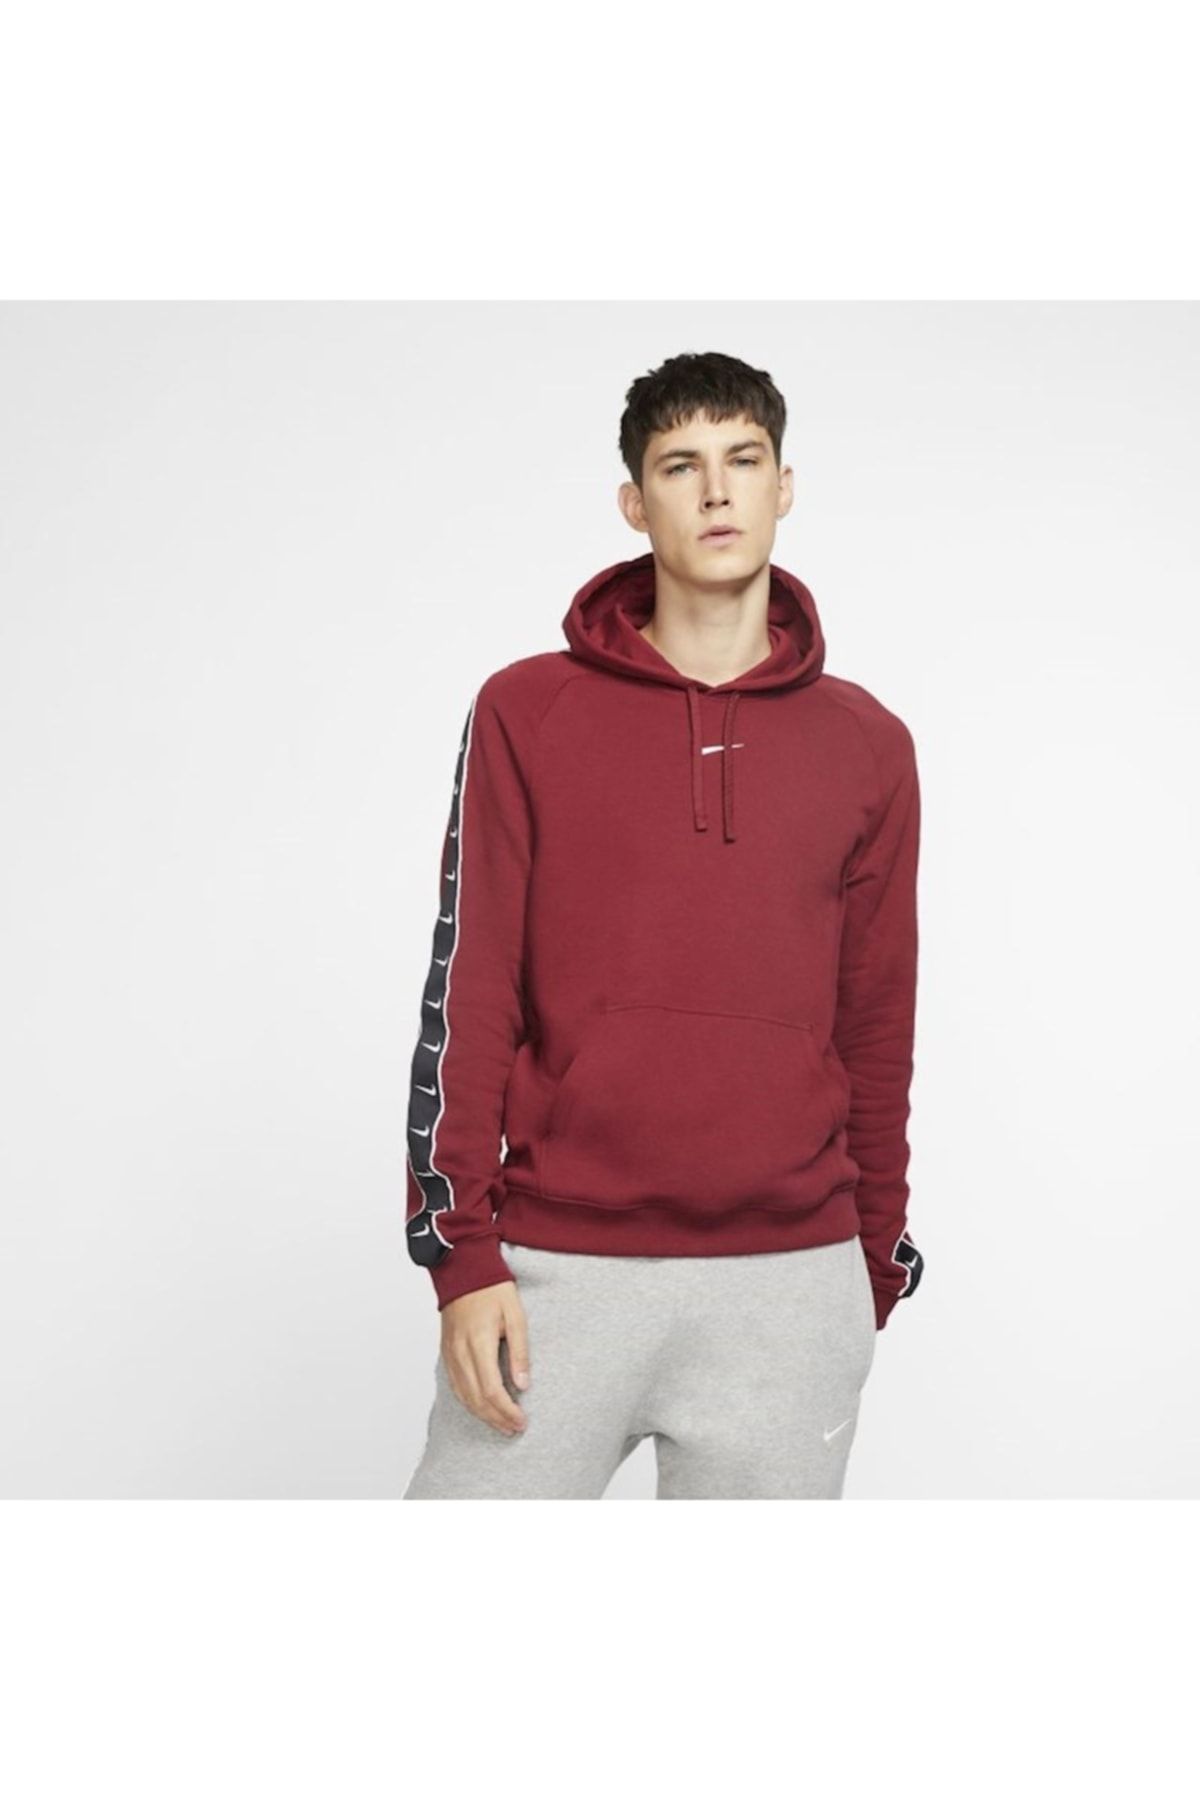 Nike Sportswear Swoosh Men's Pullover Fleece Hoodie - Red